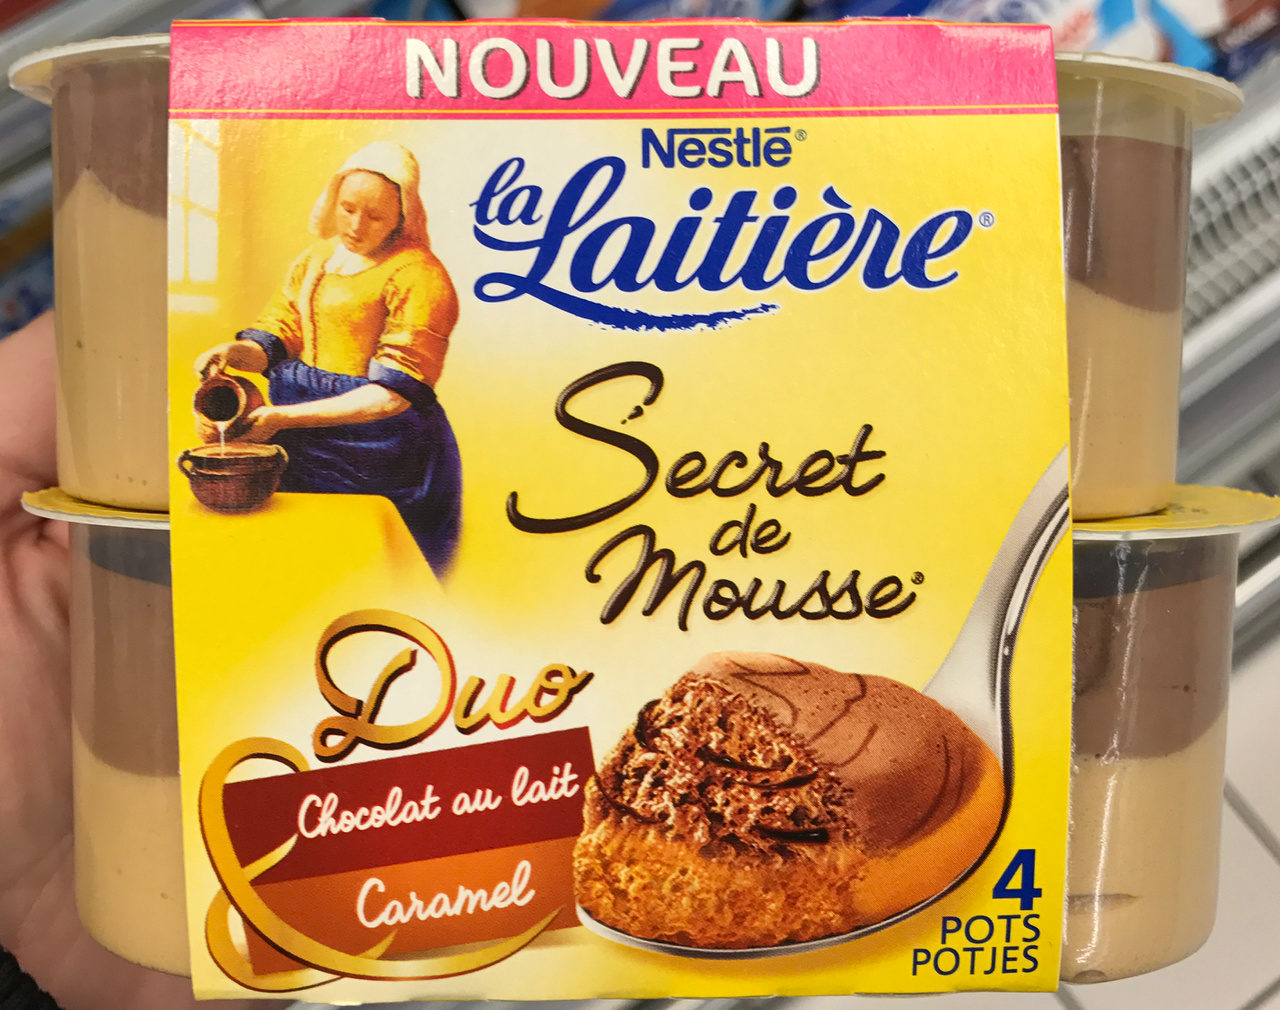 La Laitière Secret de Mousse Duo Chocolat au Lait Caramel - Product - fr